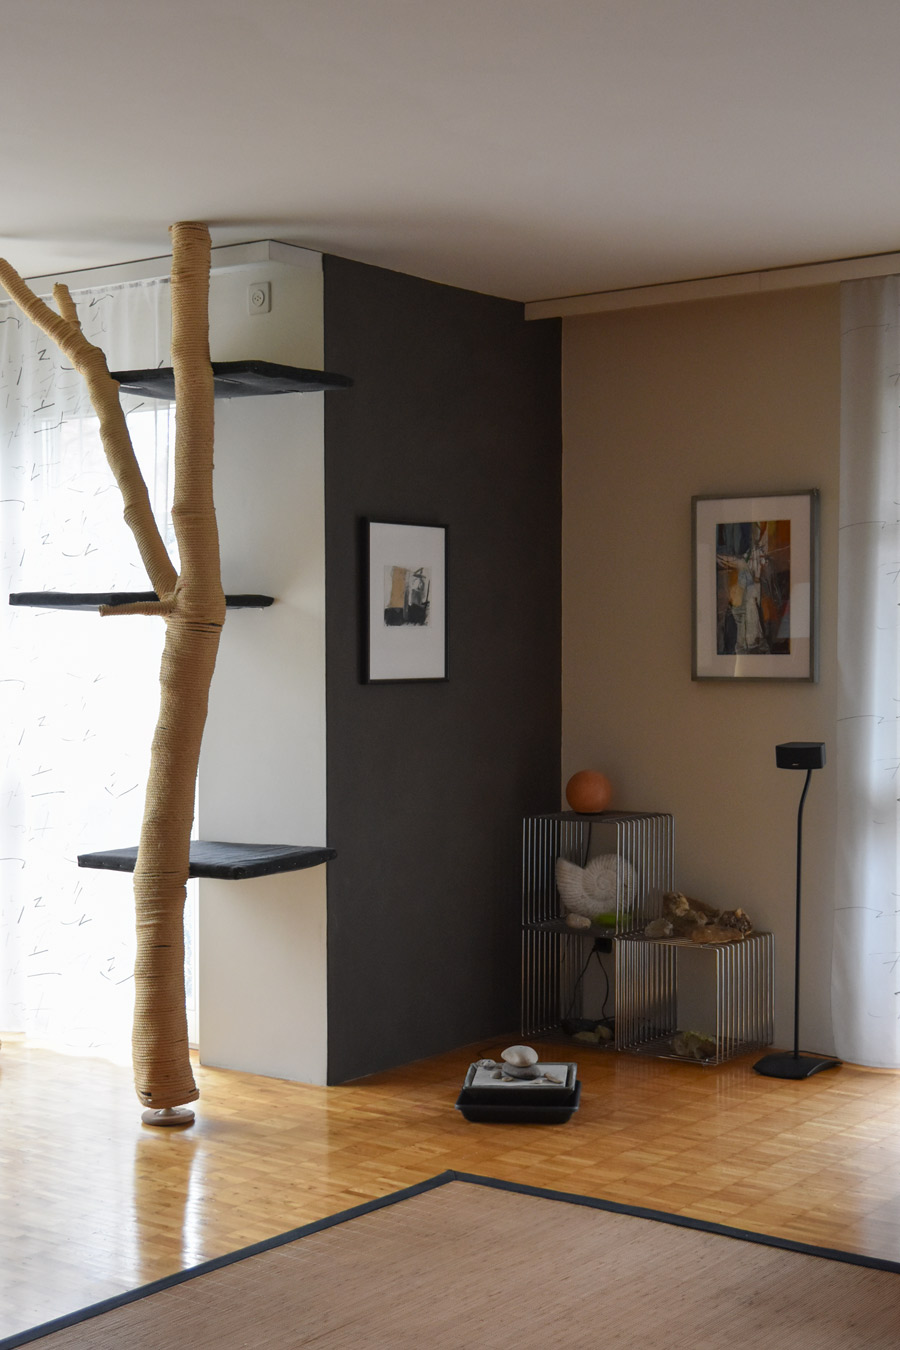 Farbgestaltung + Feng Shui im Innenraum: Das Bild zeigt das Wohnzimmer im Erdgeschoss in hellem Sandton mit graubrauner Eckwand.